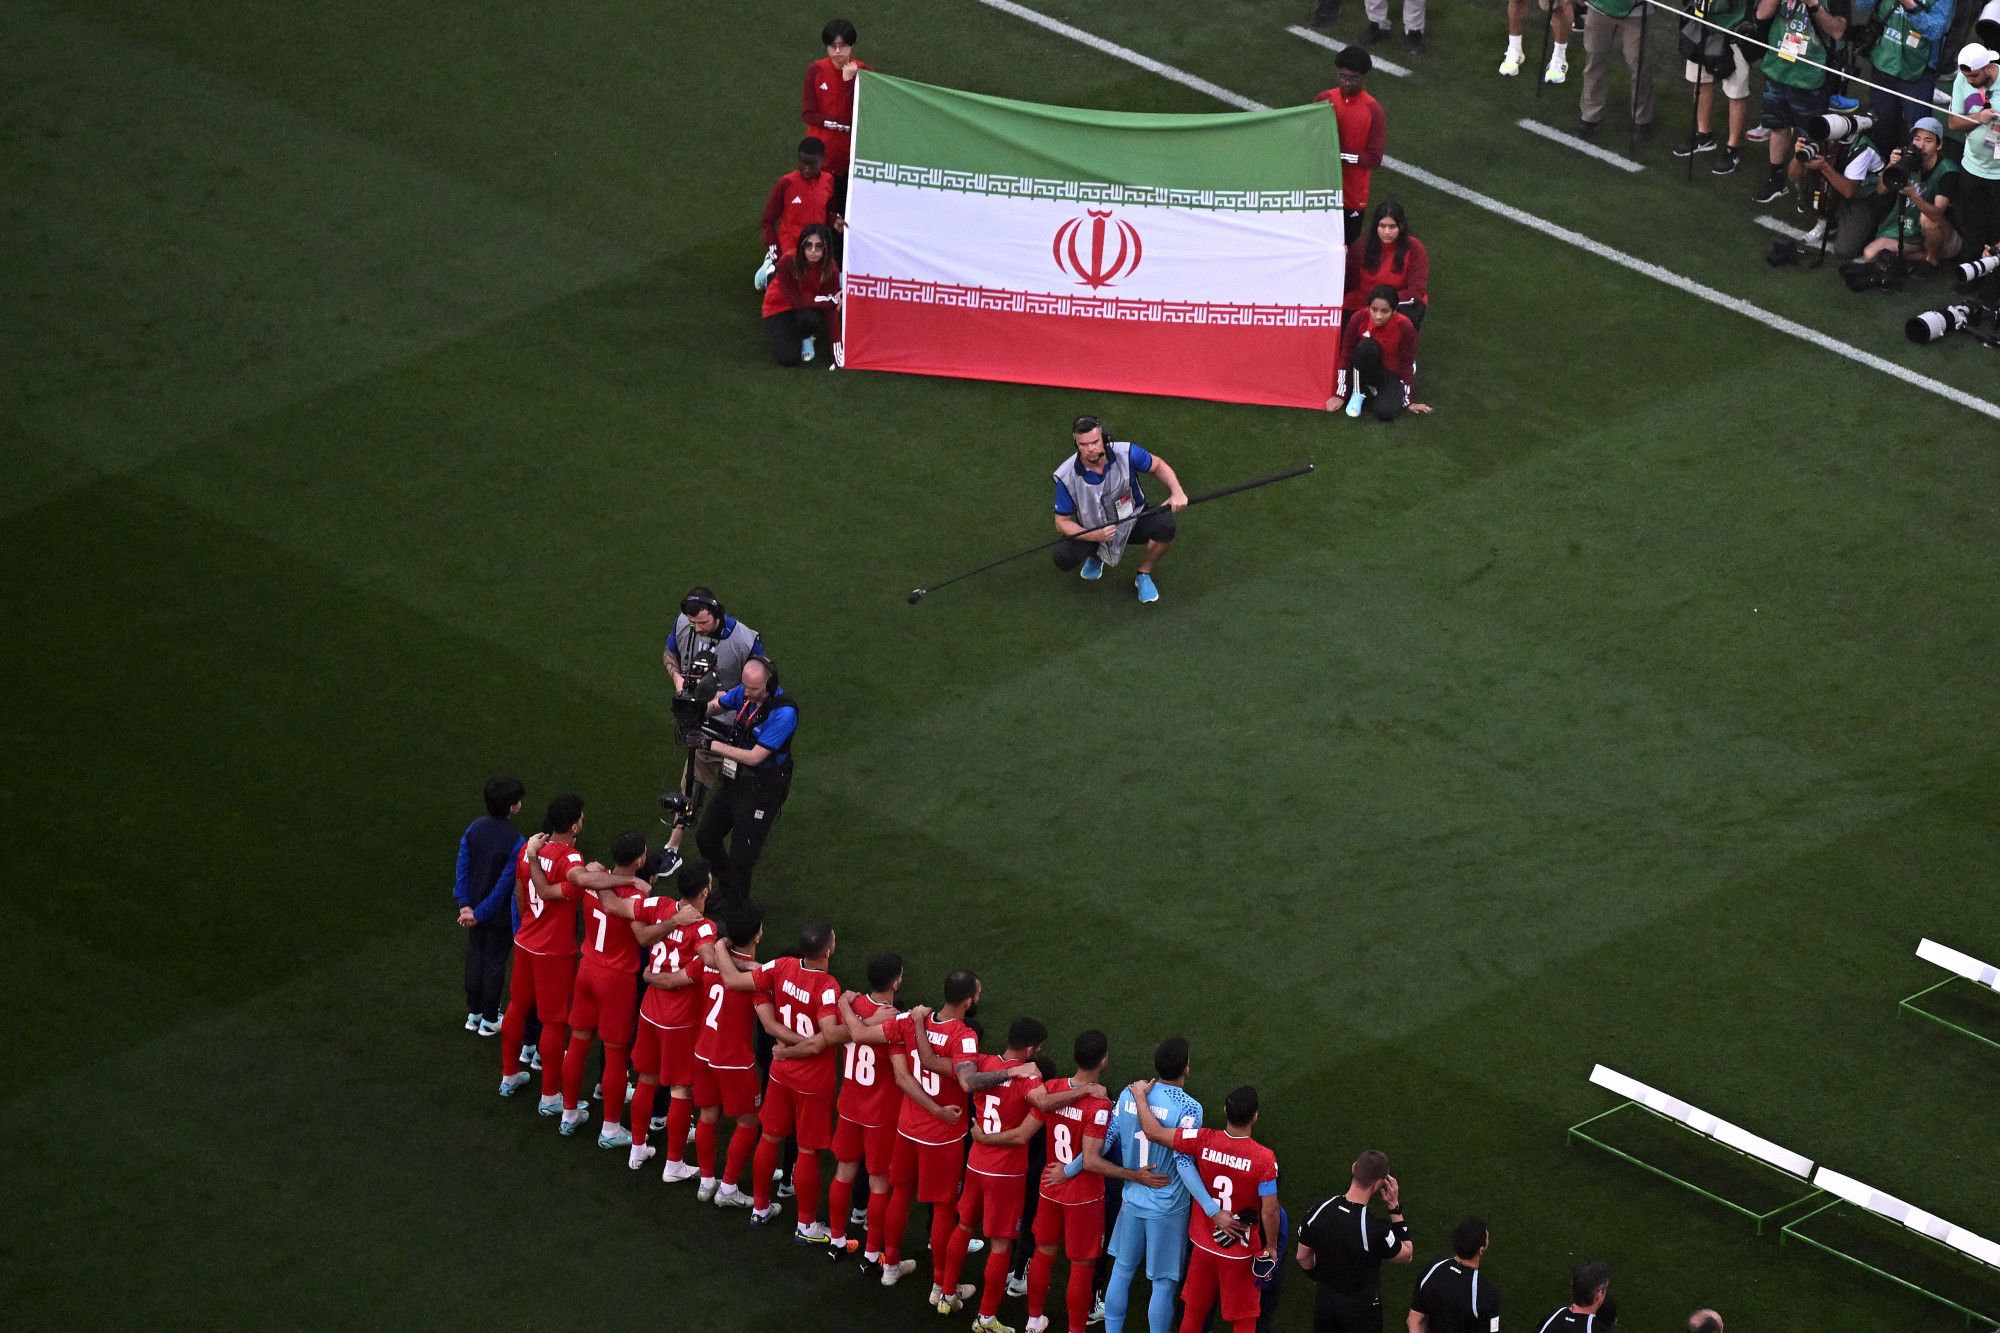 Az iráni játékosok tiltakozásból nem énekelték a himnuszuk szövegét